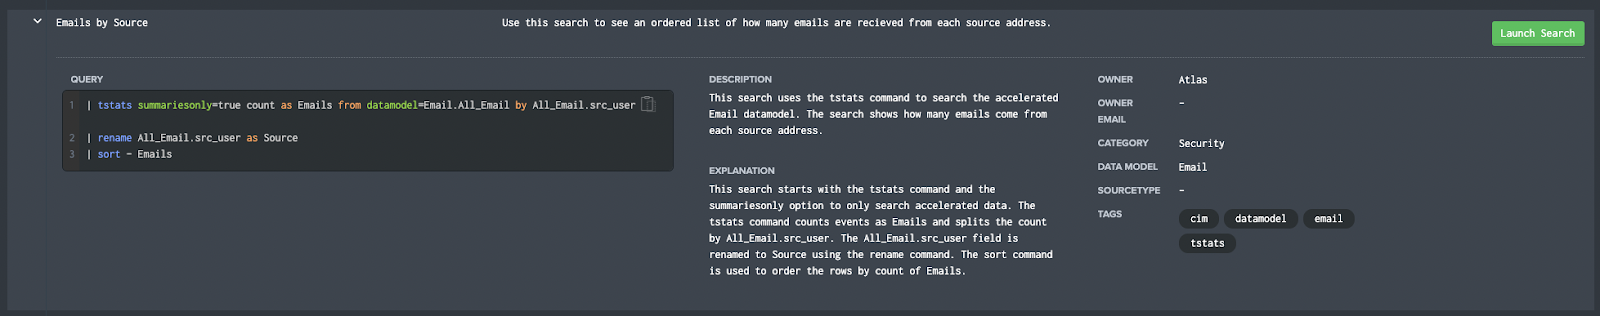 Atlas Search - Contextual